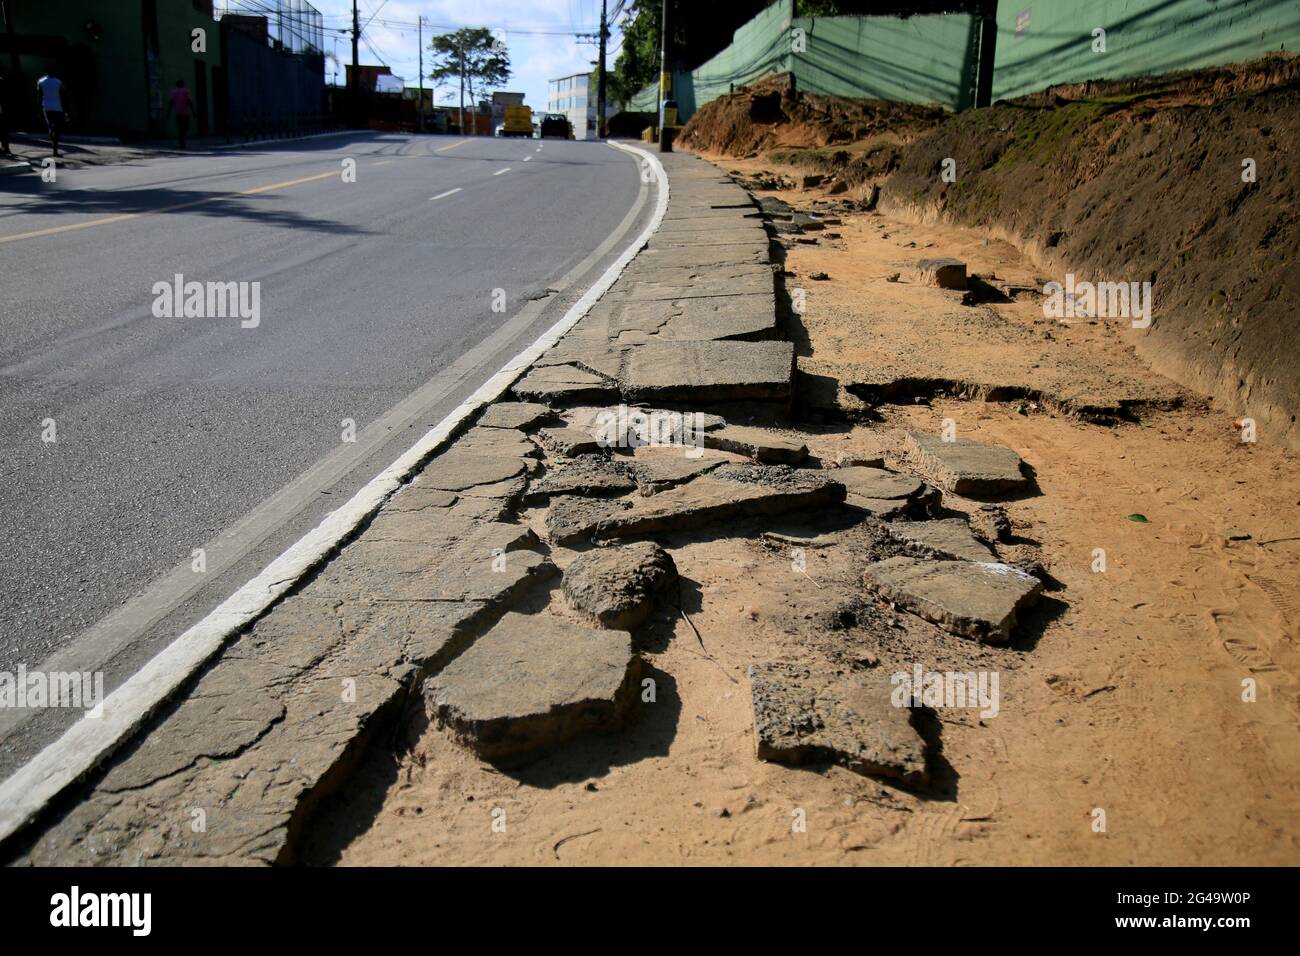 salvador, bahia, brésil - 18 juin 2021 : trottoir désaéré causant un risque d'accident pour les piétons dans la ville de Salvador. *** Légende locale *** Banque D'Images